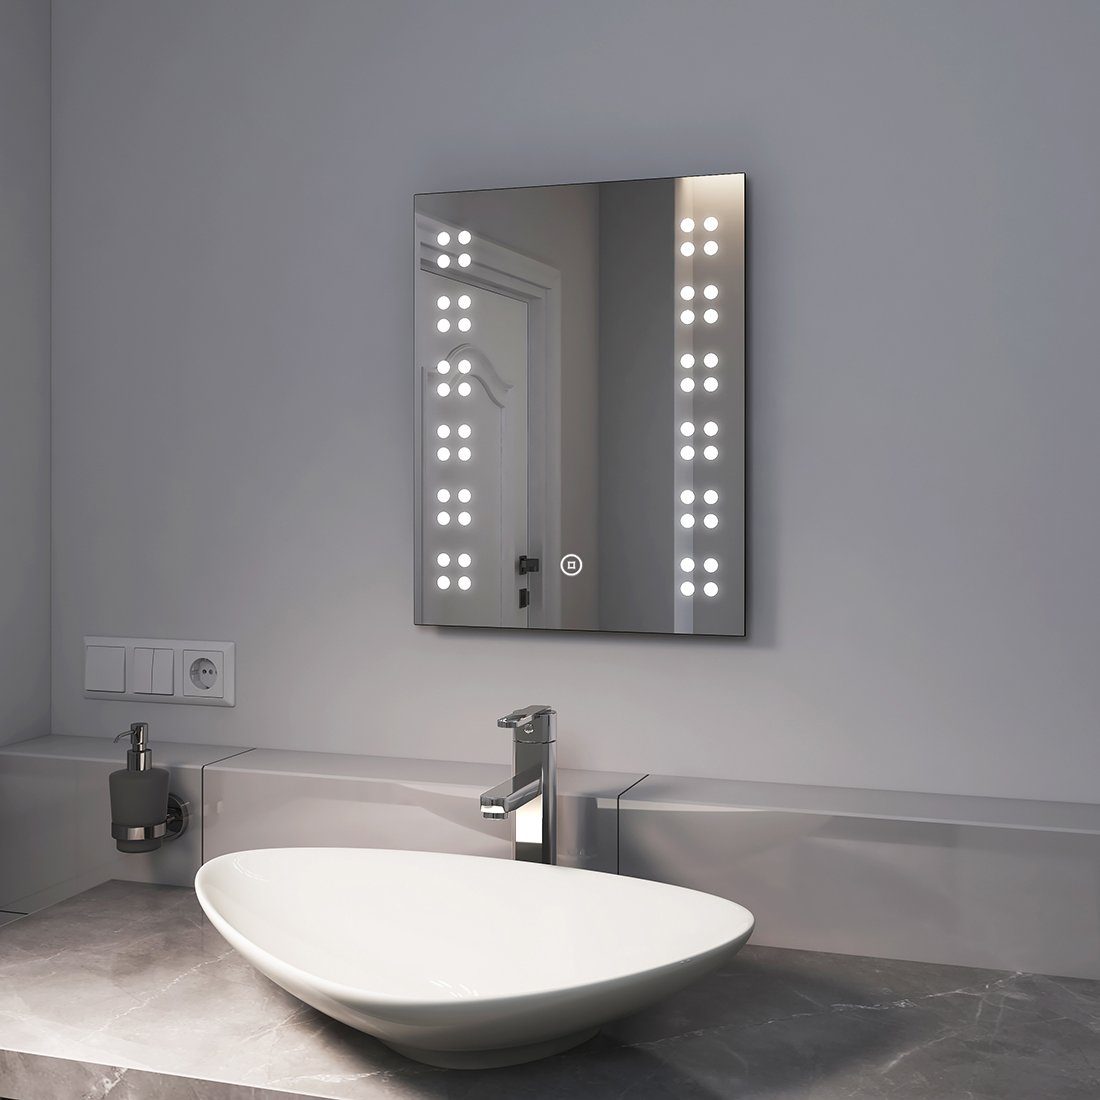 https://i.otto.de/i/otto/61a2f569-43cc-44ca-b277-480713465e2e/emke-badspiegel-kleiner-led-badspiegel-mit-beleuchtung-badezimmerspiegel-mit-touchschalter-6500k-kaltweiss-licht-kaltweiss.jpg?$formatz$